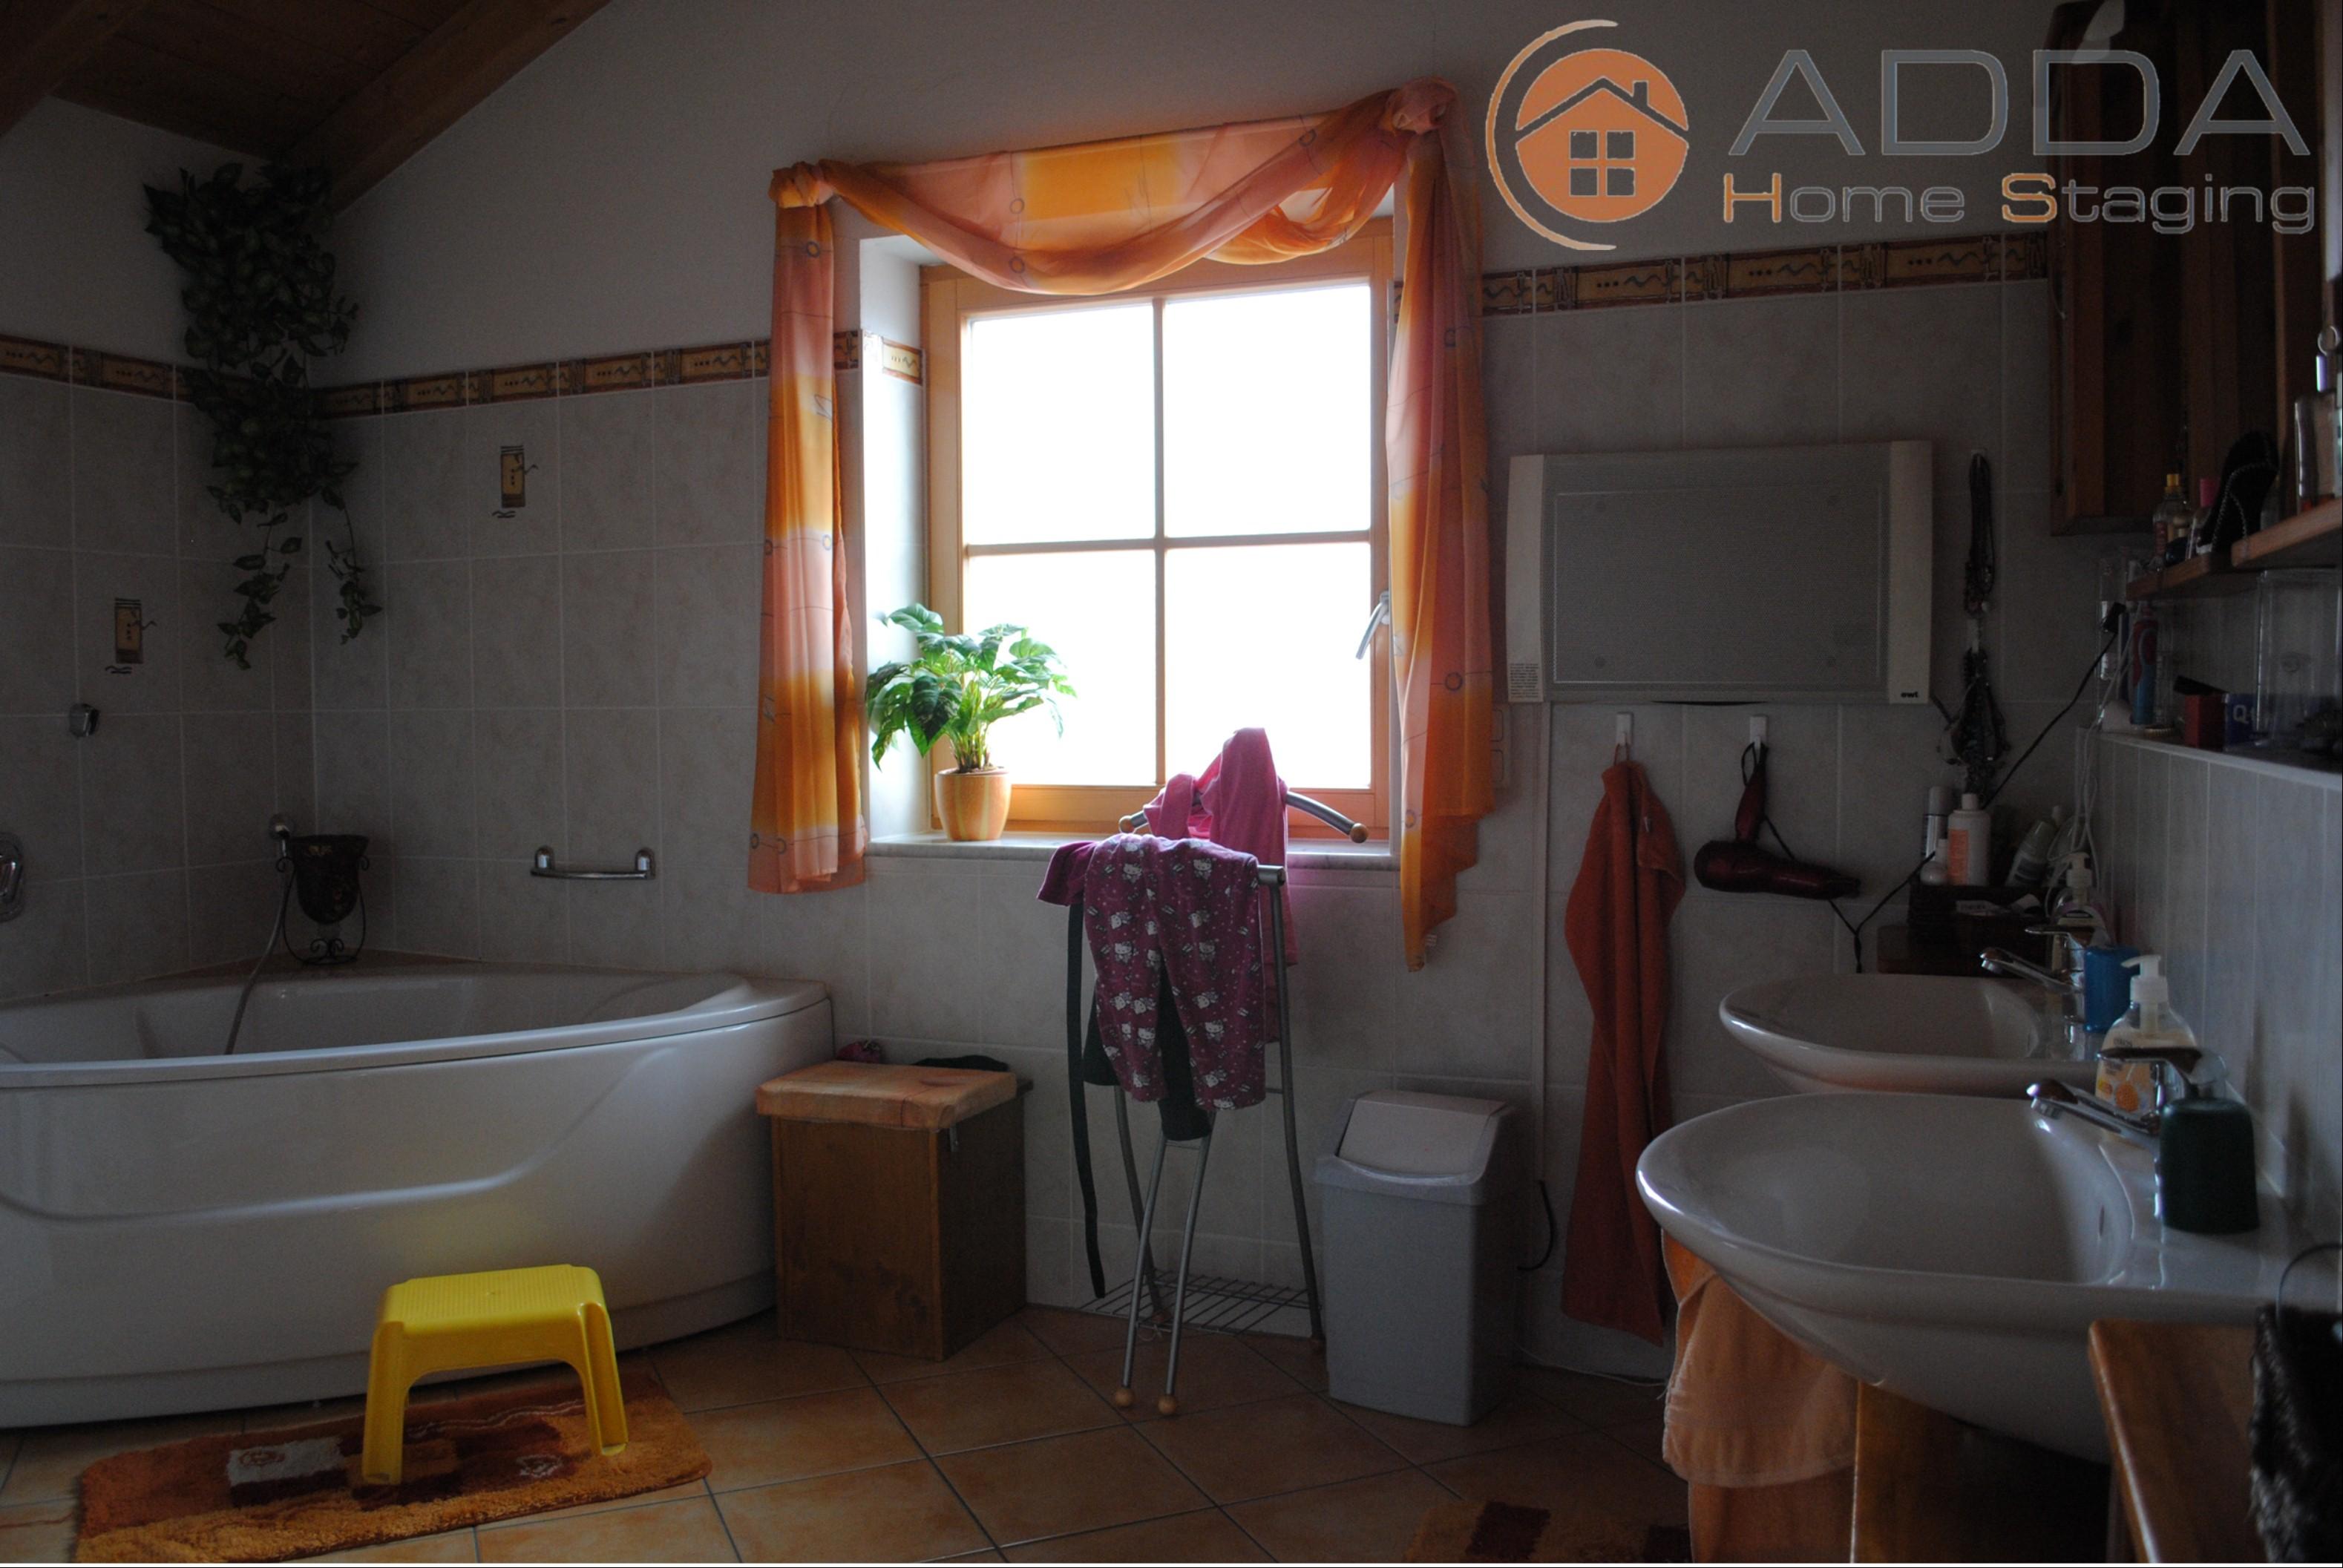 Bad vor dem Home Staging #ferienwohnung #raumdesign #raumgestaltung ©ADDA Home Staging